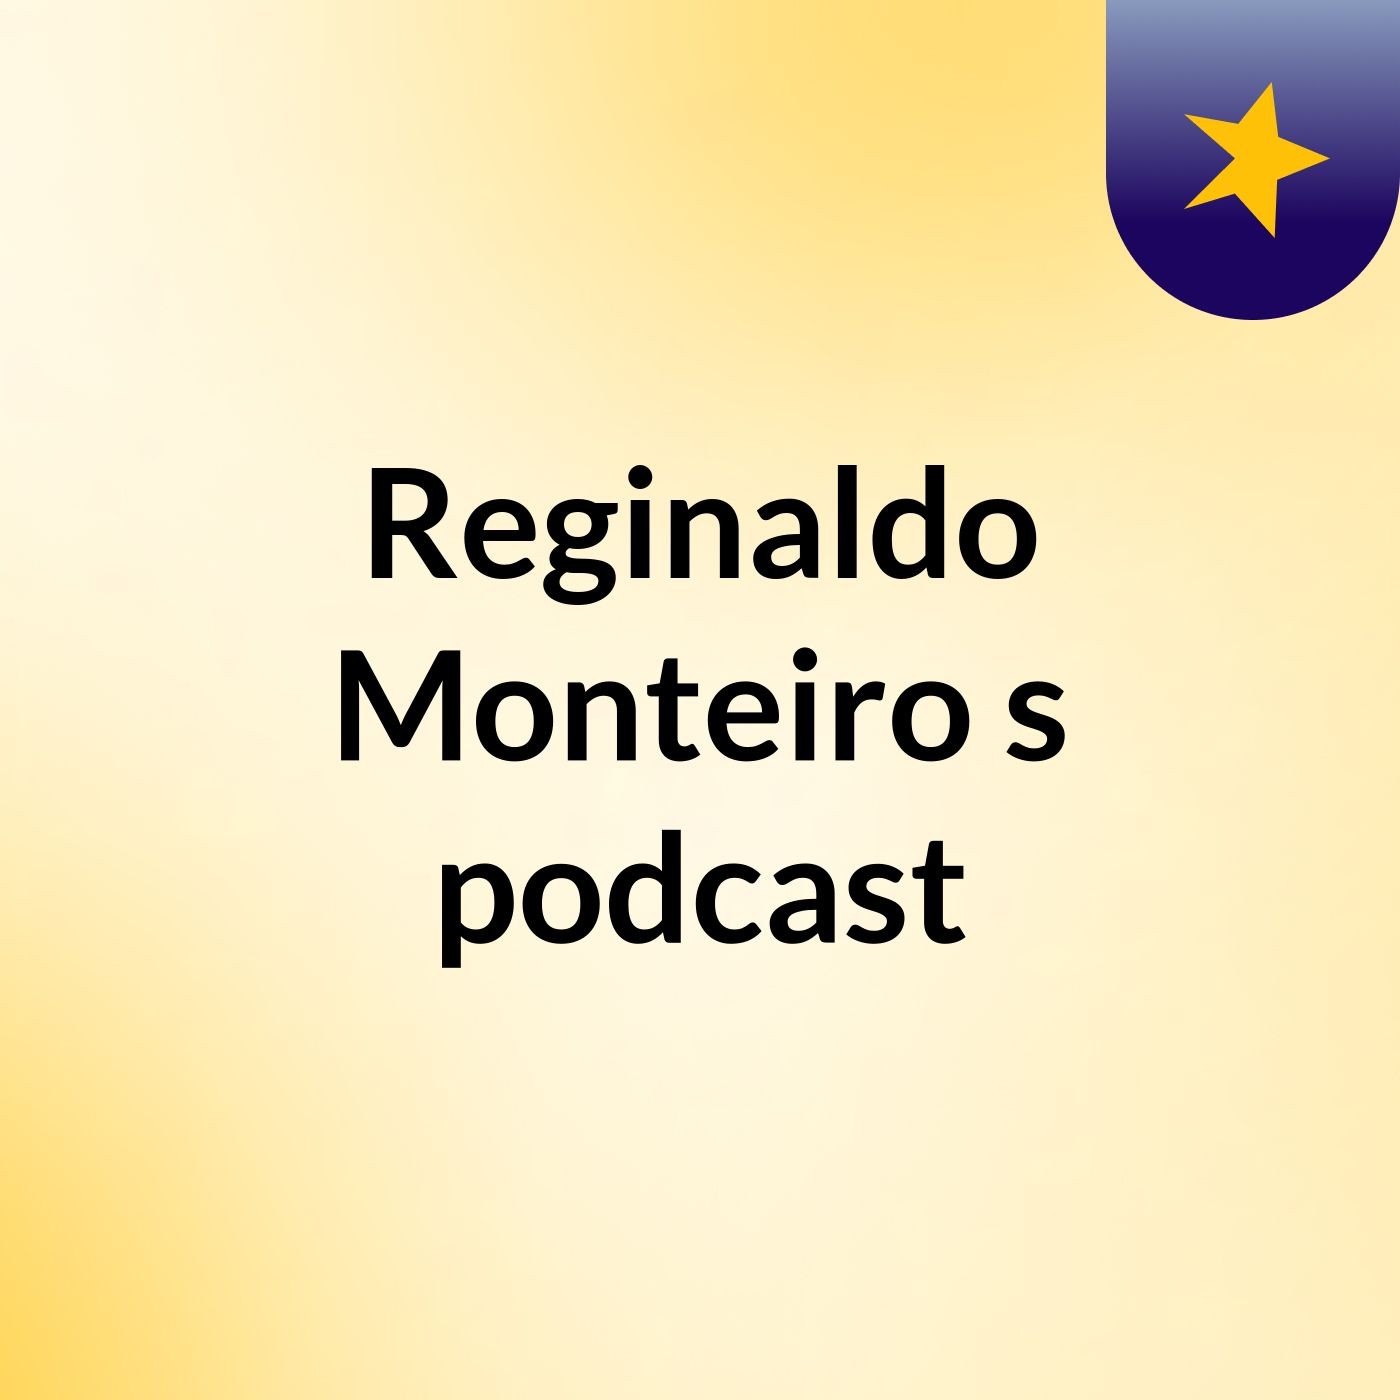 Reginaldo Monteiro's podcast